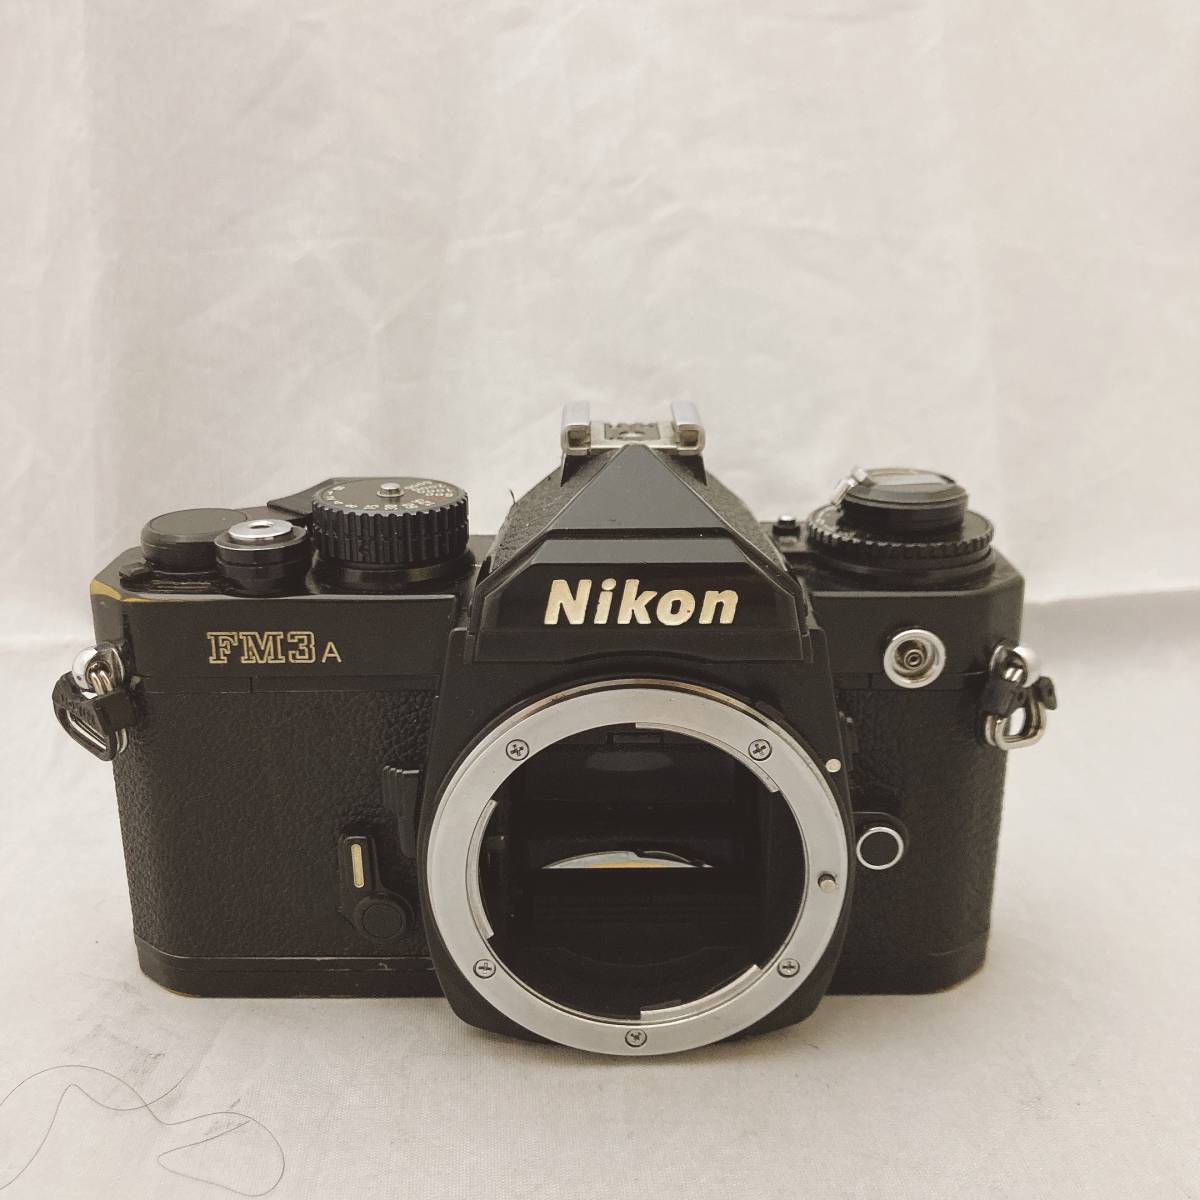 Nikon ニコン FM3A Black ブラック ボディ 一眼レフカメラ フィルムカメラ フィルム一眼レフカメラ カメラ 現状品